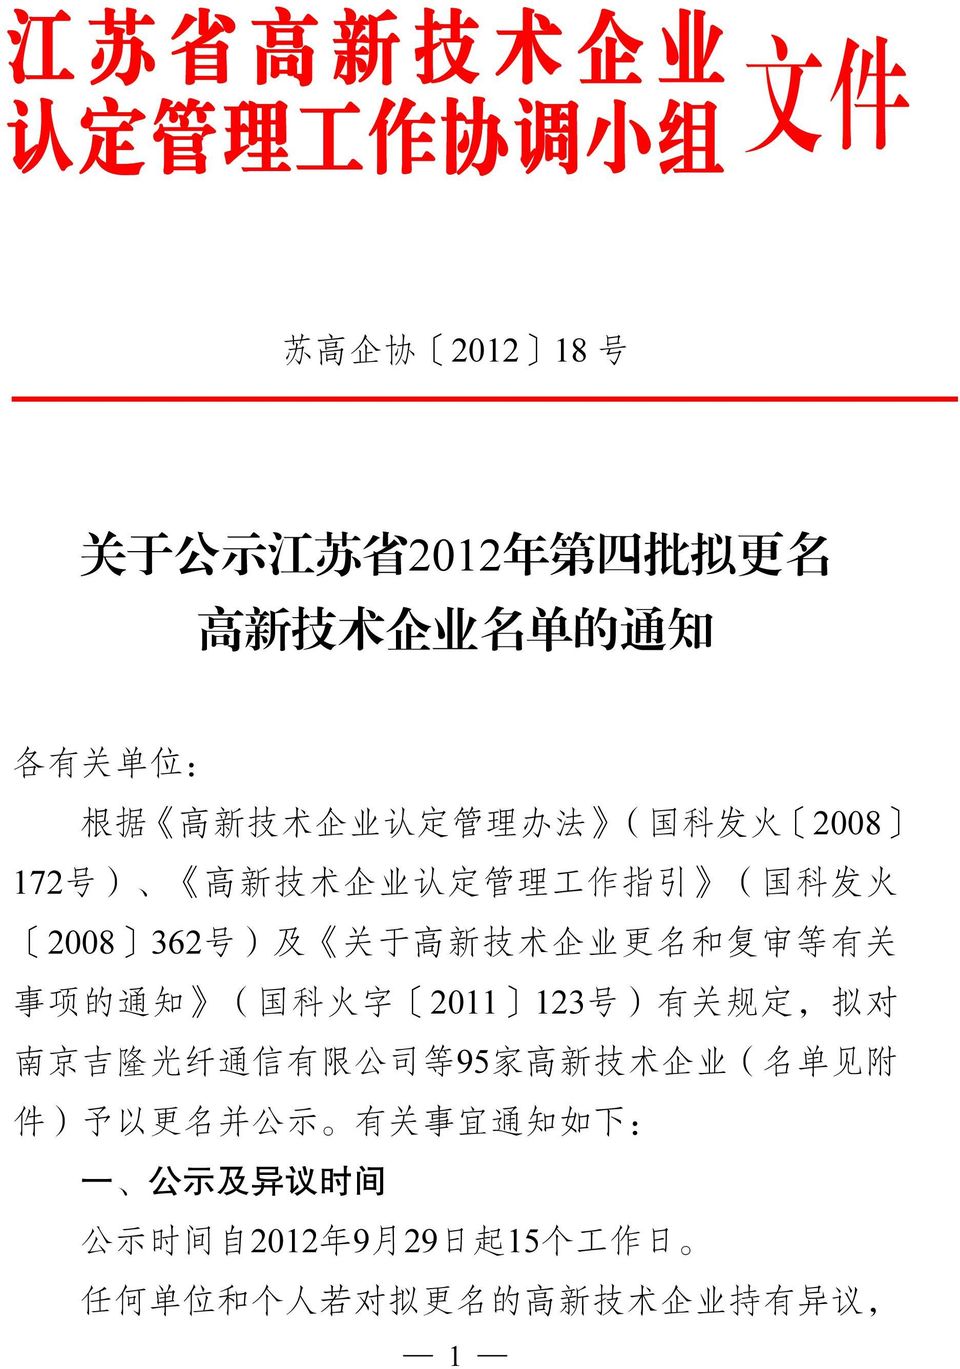 术 企 业 更 名 和 复 审 等 有 关 事 项 的 通 知 ( 国 科 火 字 2011 123 号 ) 有 关 规 定, 拟 对 南 京 吉 隆 光 纤 通 信 有 限 公 司 等 95 家 高 新 技 术 企 业 ( 名 单 见 附 件 ) 予 以 更